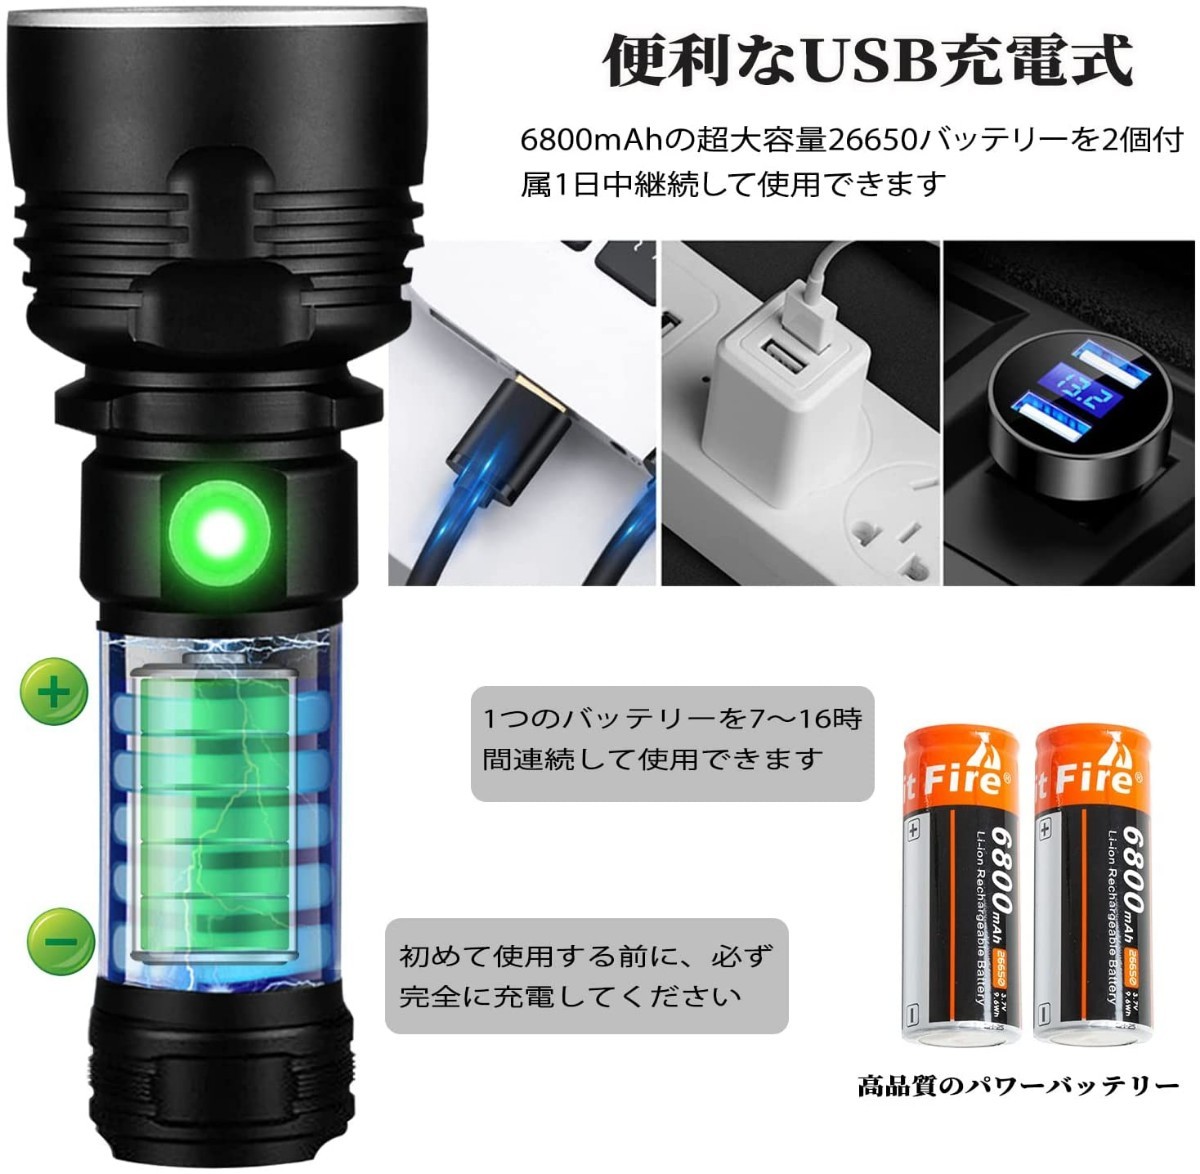 懐中電灯 ledライト 超強力 軍用ライト超高輝度 フラッシュライト usb 充電式 日本語マニュアル付き